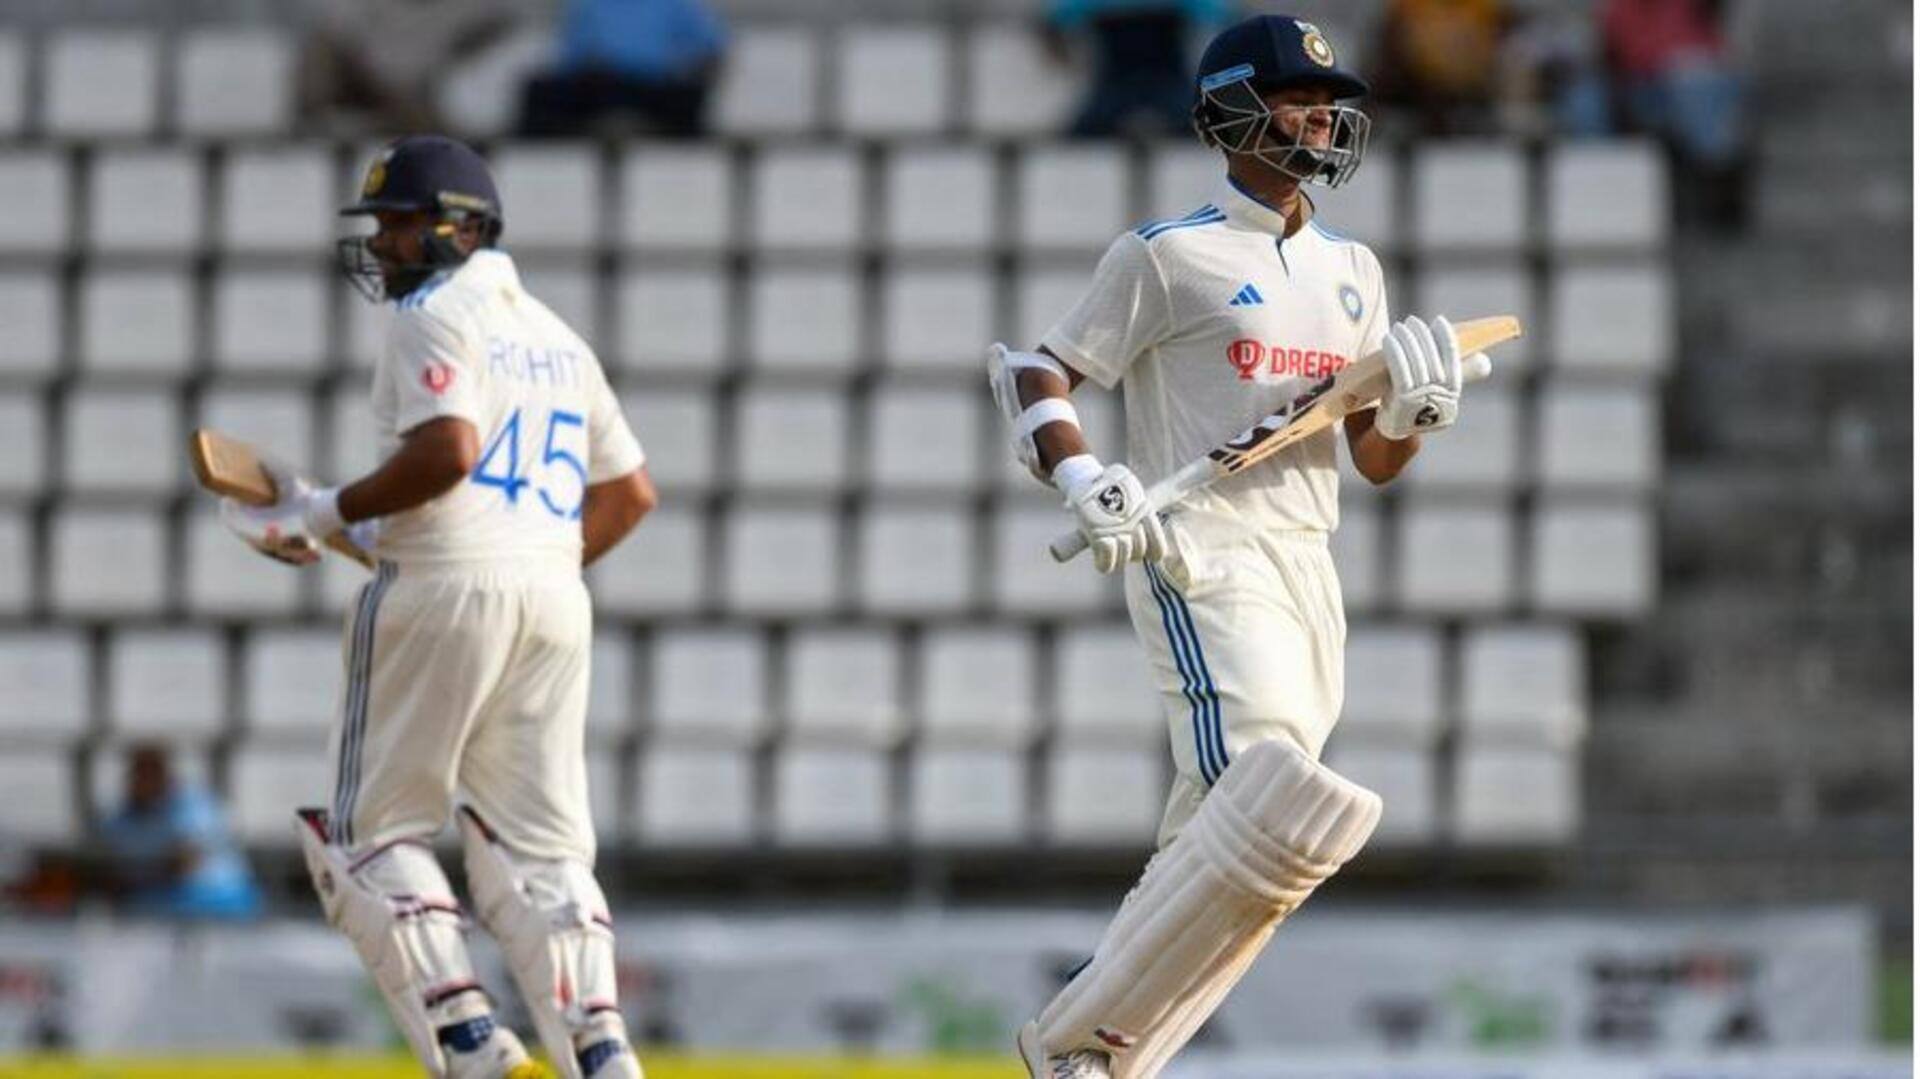 भारत और वेस्टइंडीज के बीच आज से खेला जाएगा 100वां टेस्ट मैच, जानिए किसका पलड़ा भारी